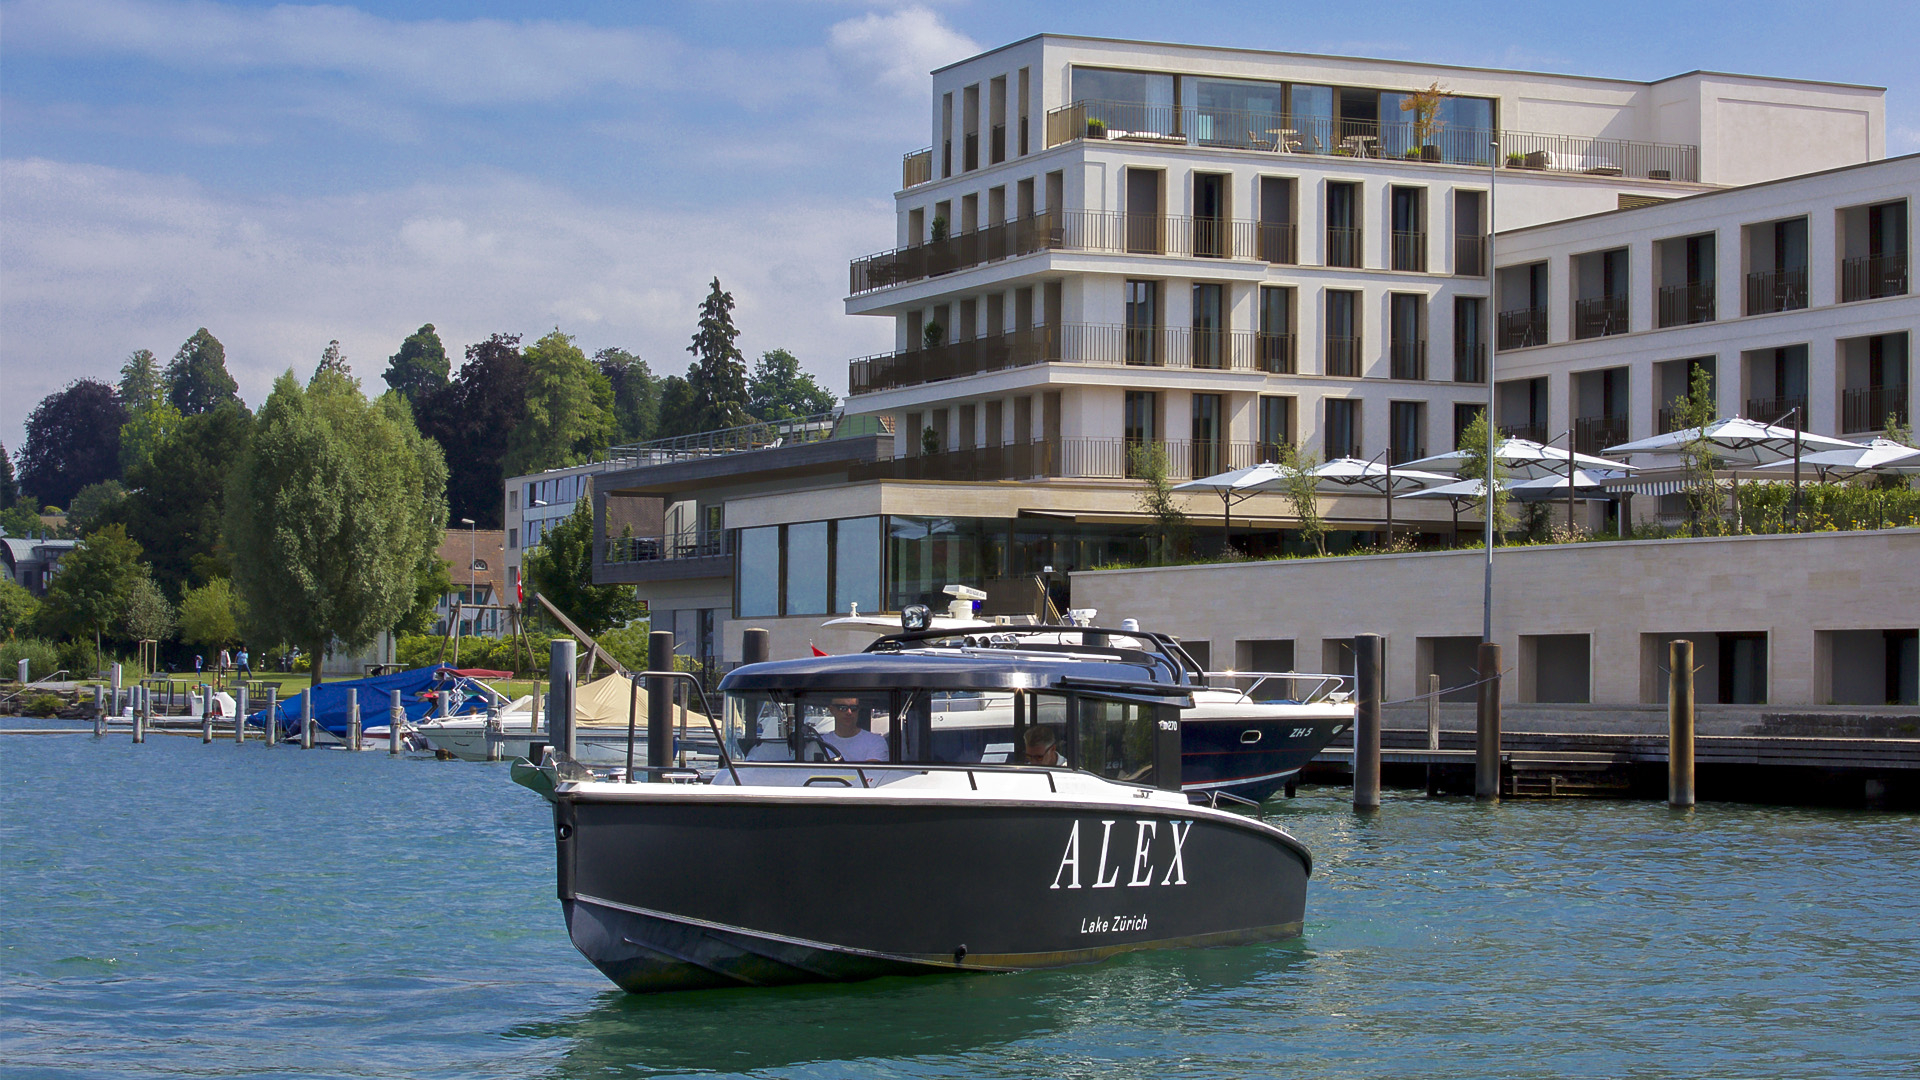 ALEX - Отель и апартаменты на берегу озера - slide